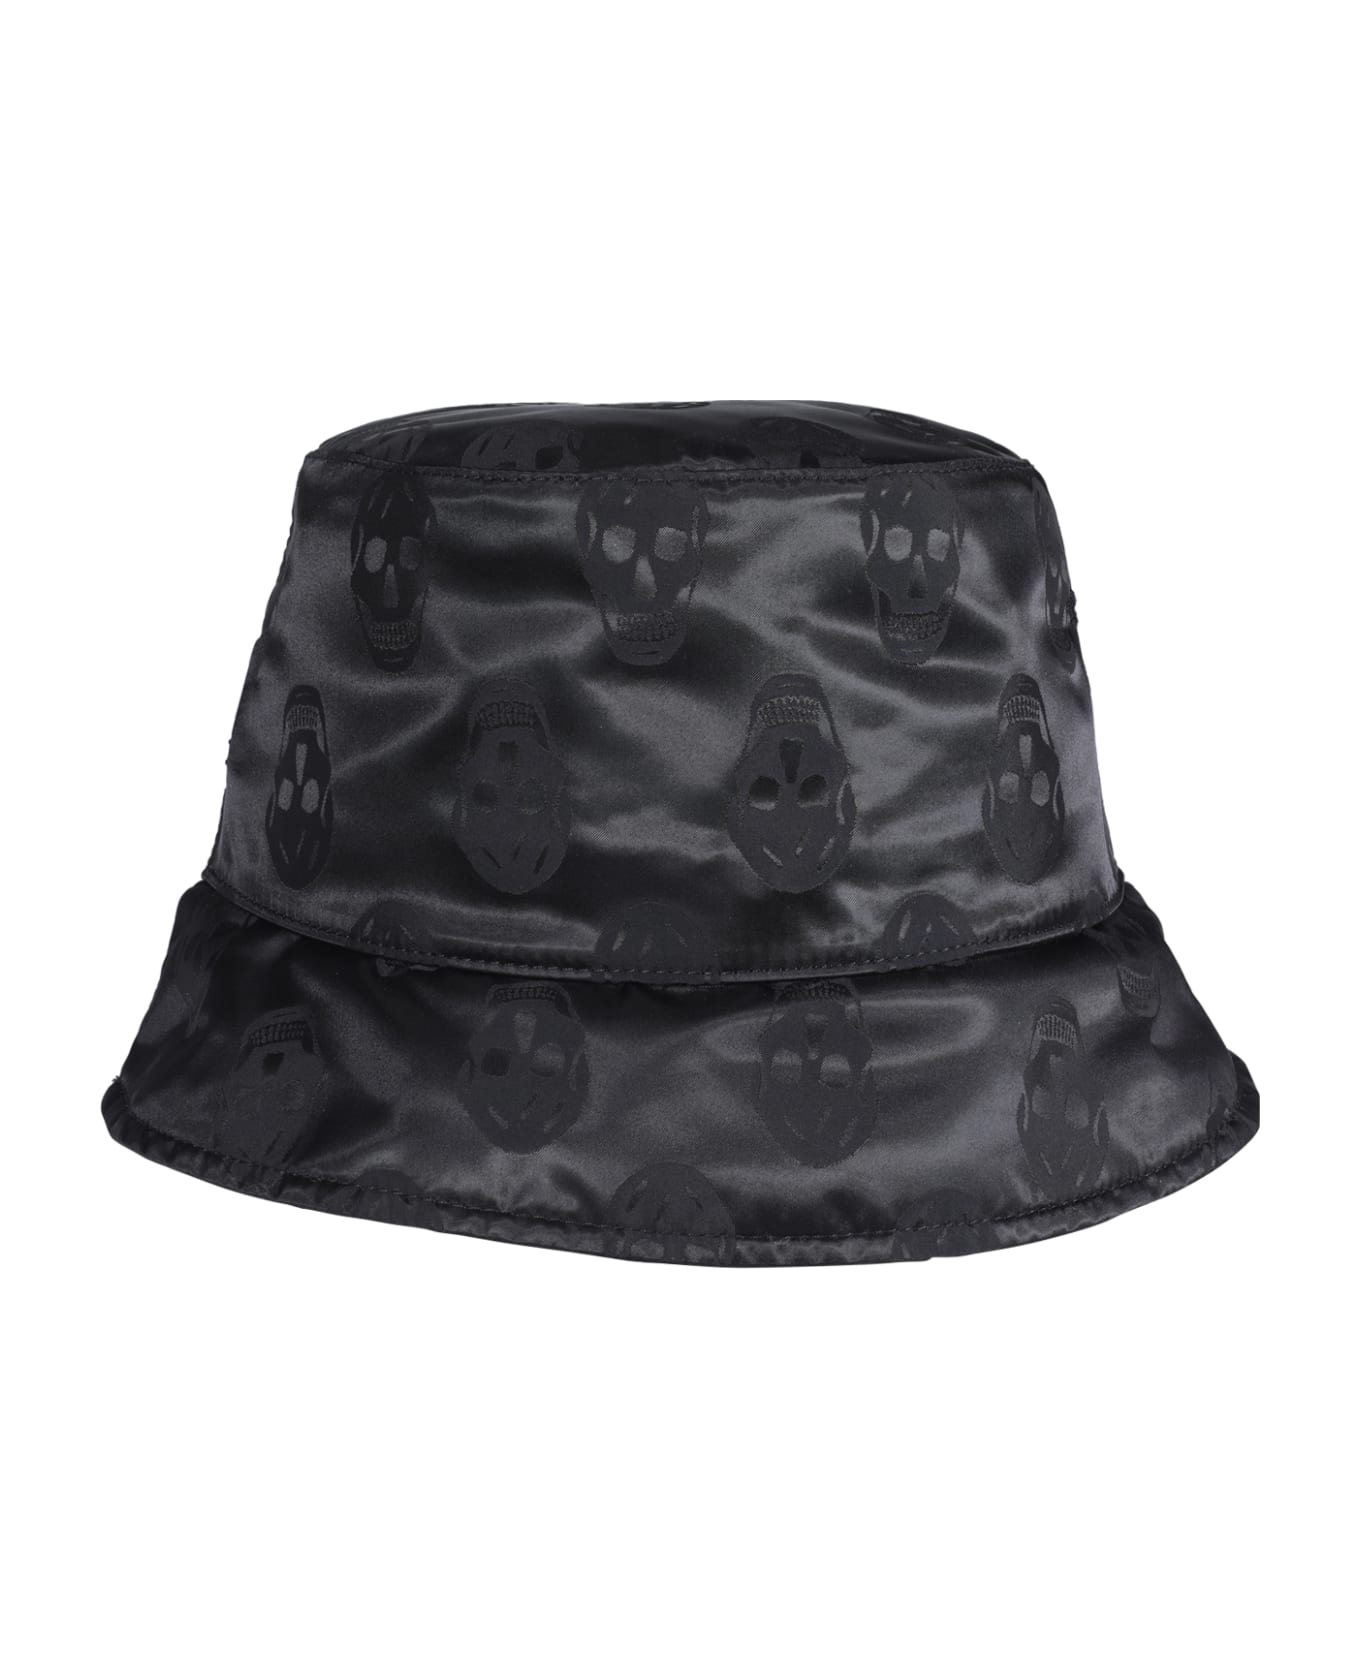 Alexander McQueen Skull Bucket Hat - Nero